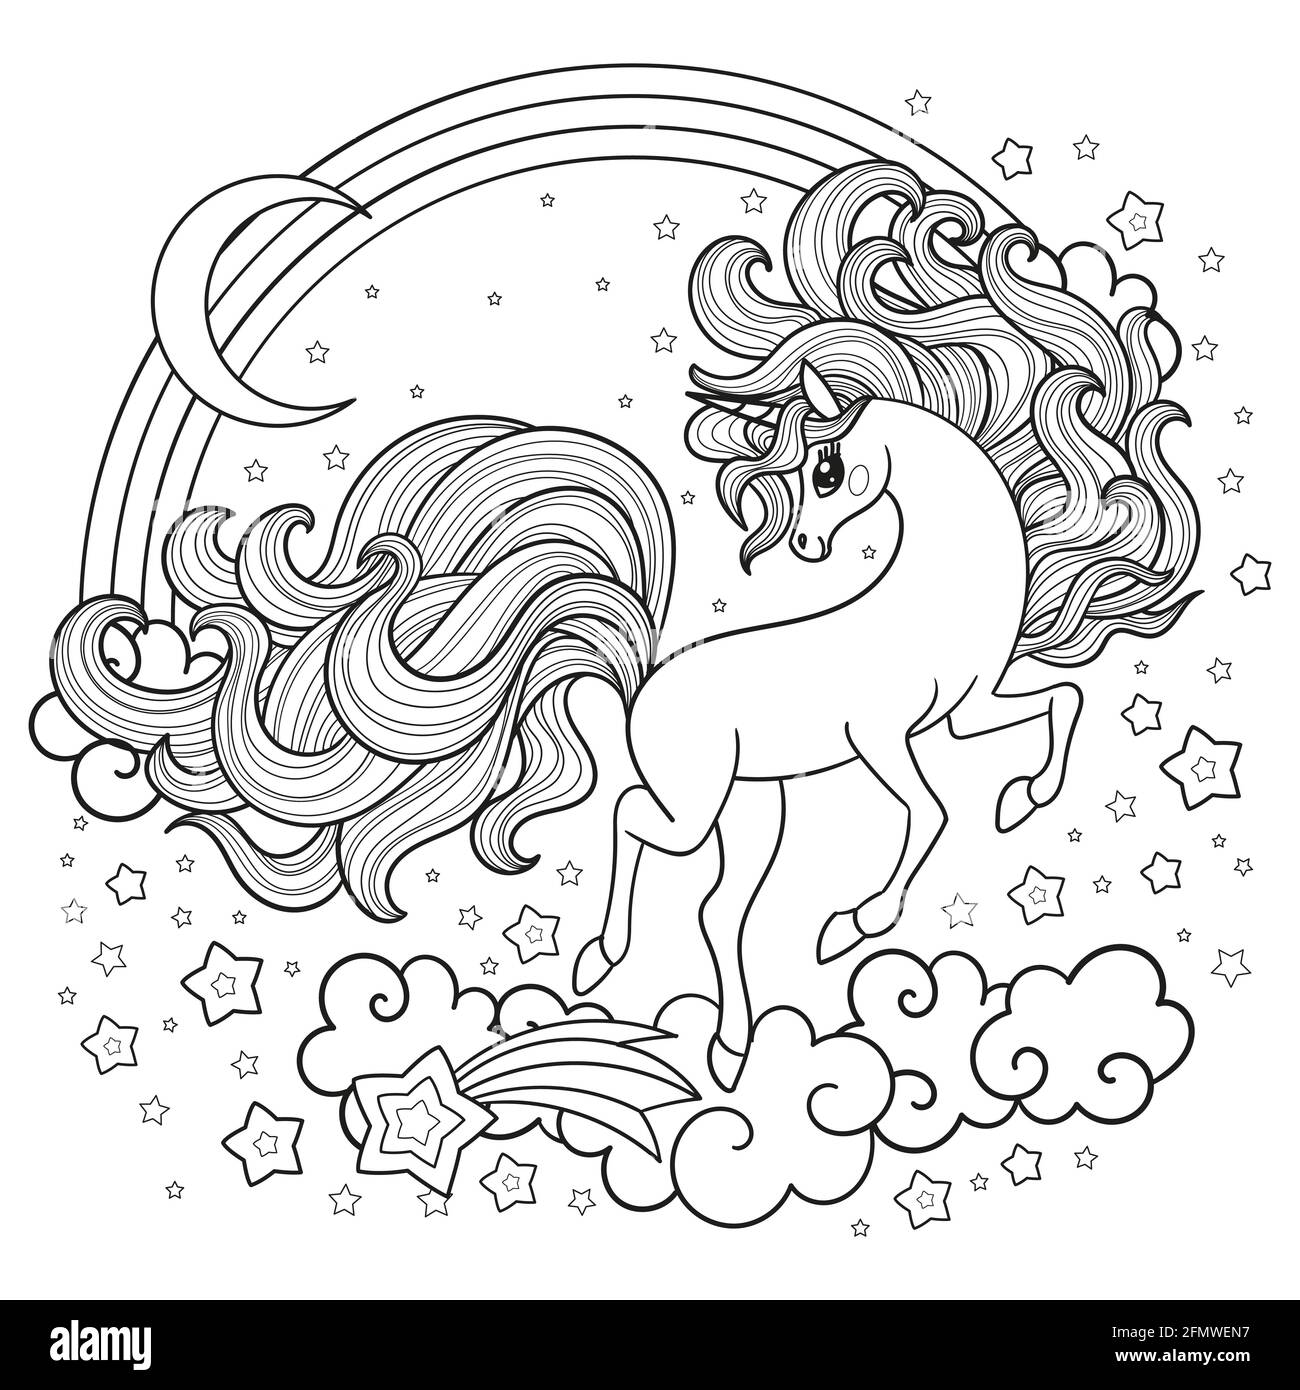 Un simpatico unicorno con un lungo galoppo di mane tra le stelle. Disegno lineare in bianco e nero. Vettore Illustrazione Vettoriale